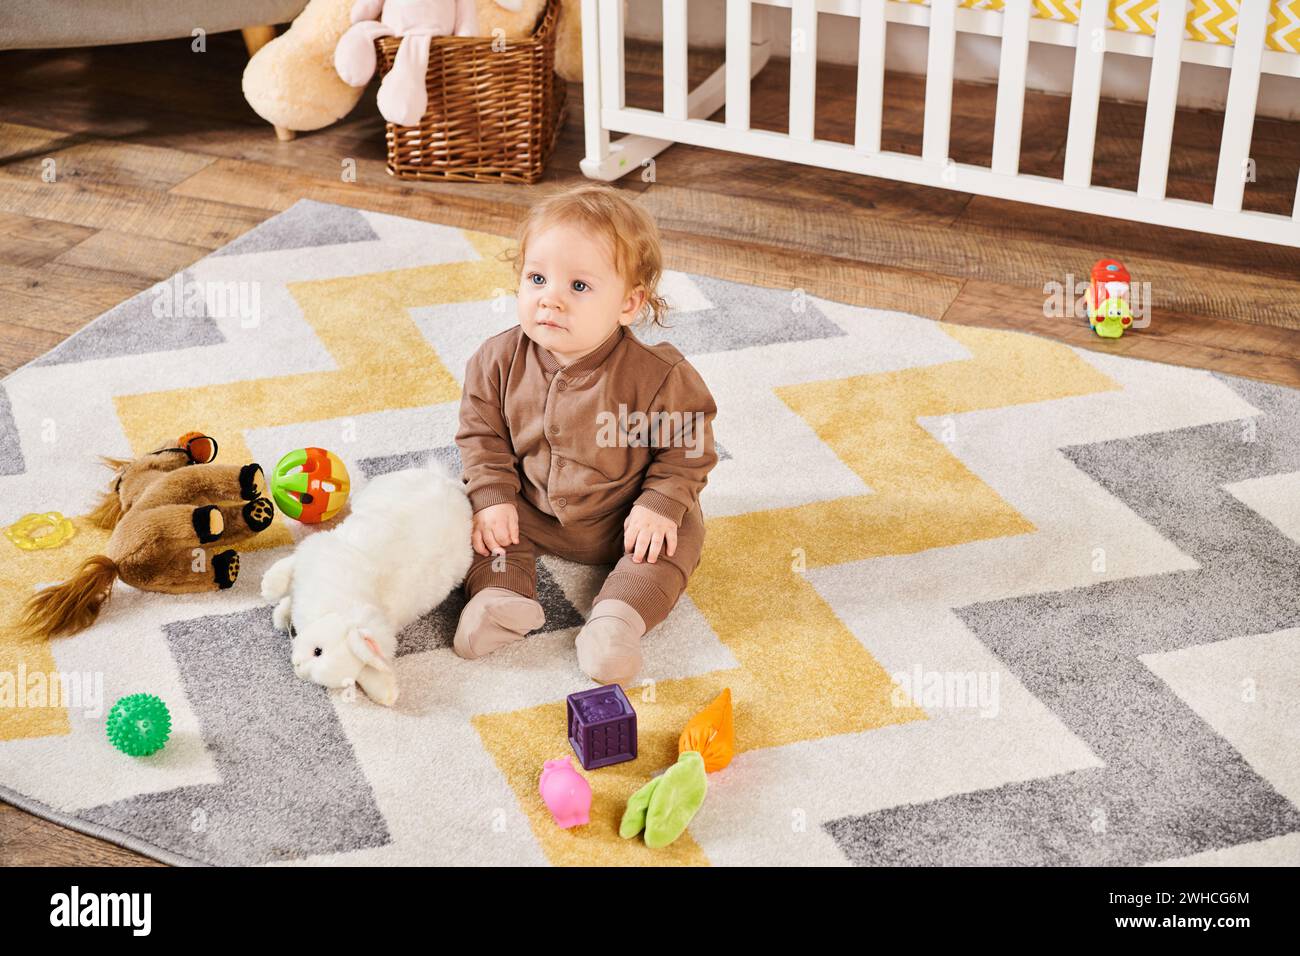 Entzückendes Kind, das auf dem Boden neben Kuschelspielzeug und Kinderbett im gemütlichen Kinderzimmer sitzt, fröhliches Kleinkind Stockfoto